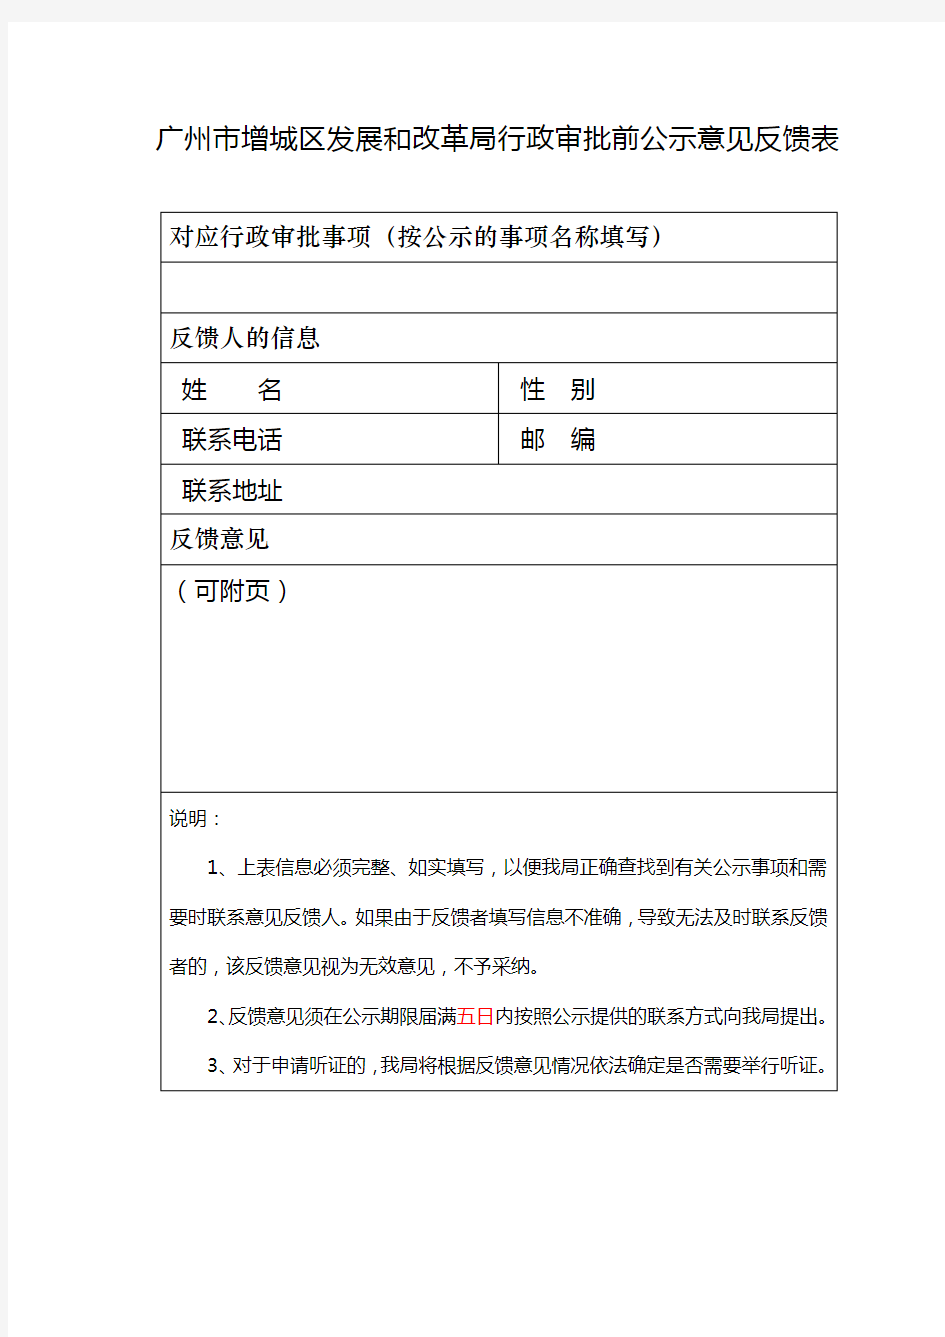 广州市增城区发展和改革局行政审批前公示意见反馈表